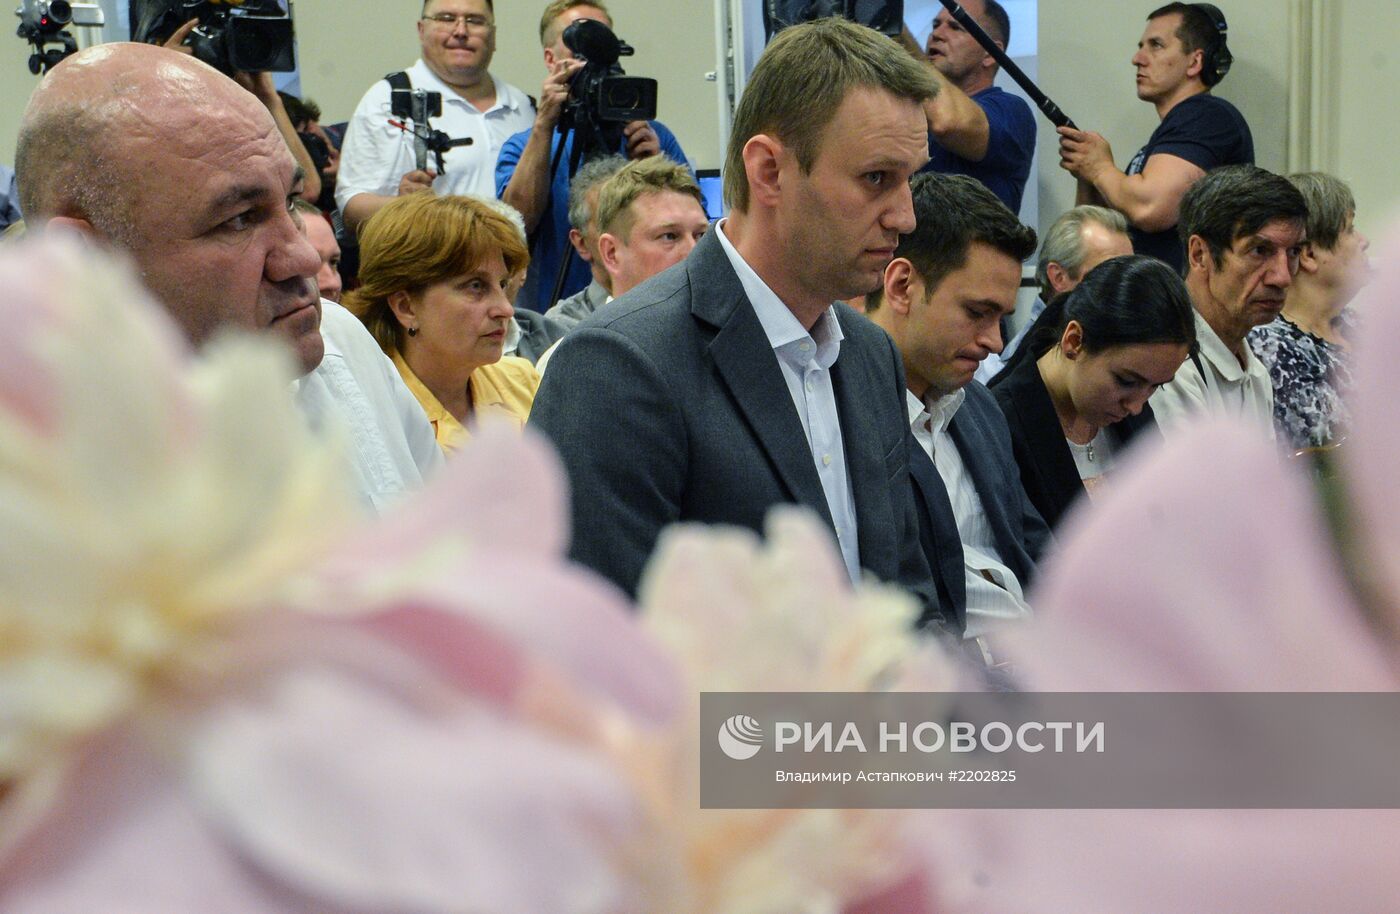 Партия РПР-Парнас выдвинула кандидата в мэры Москвы